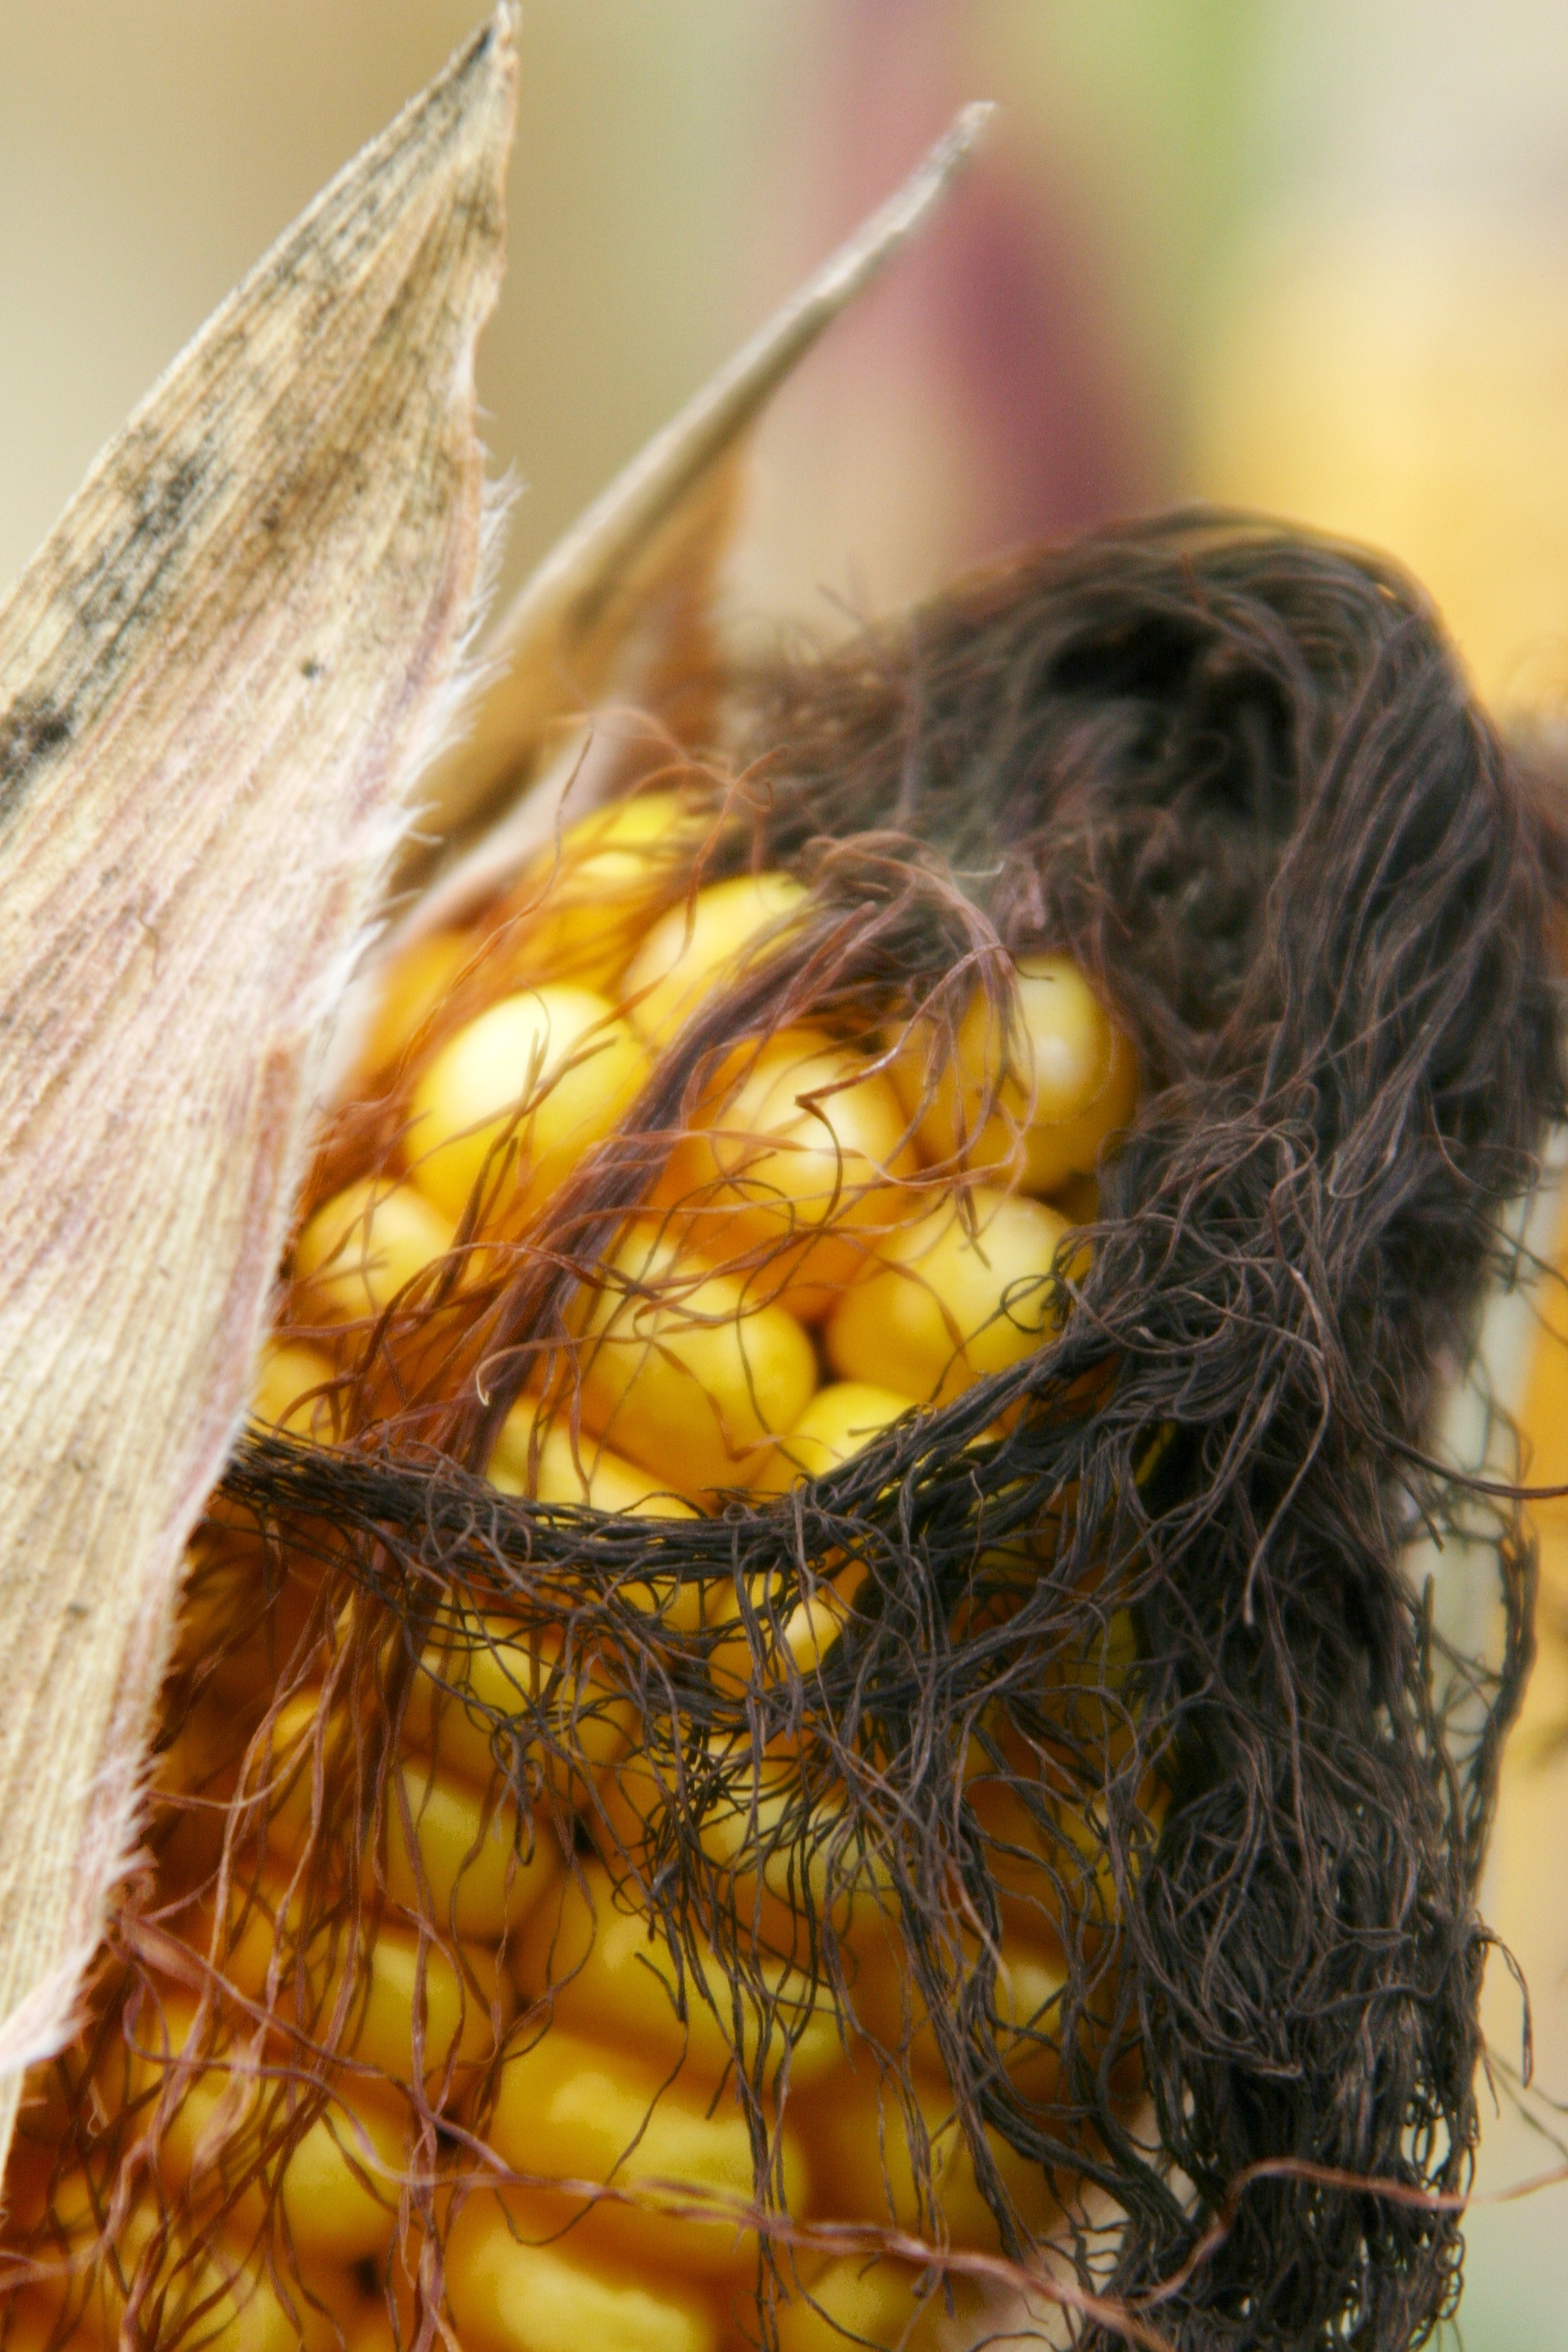 Field corn and tassel